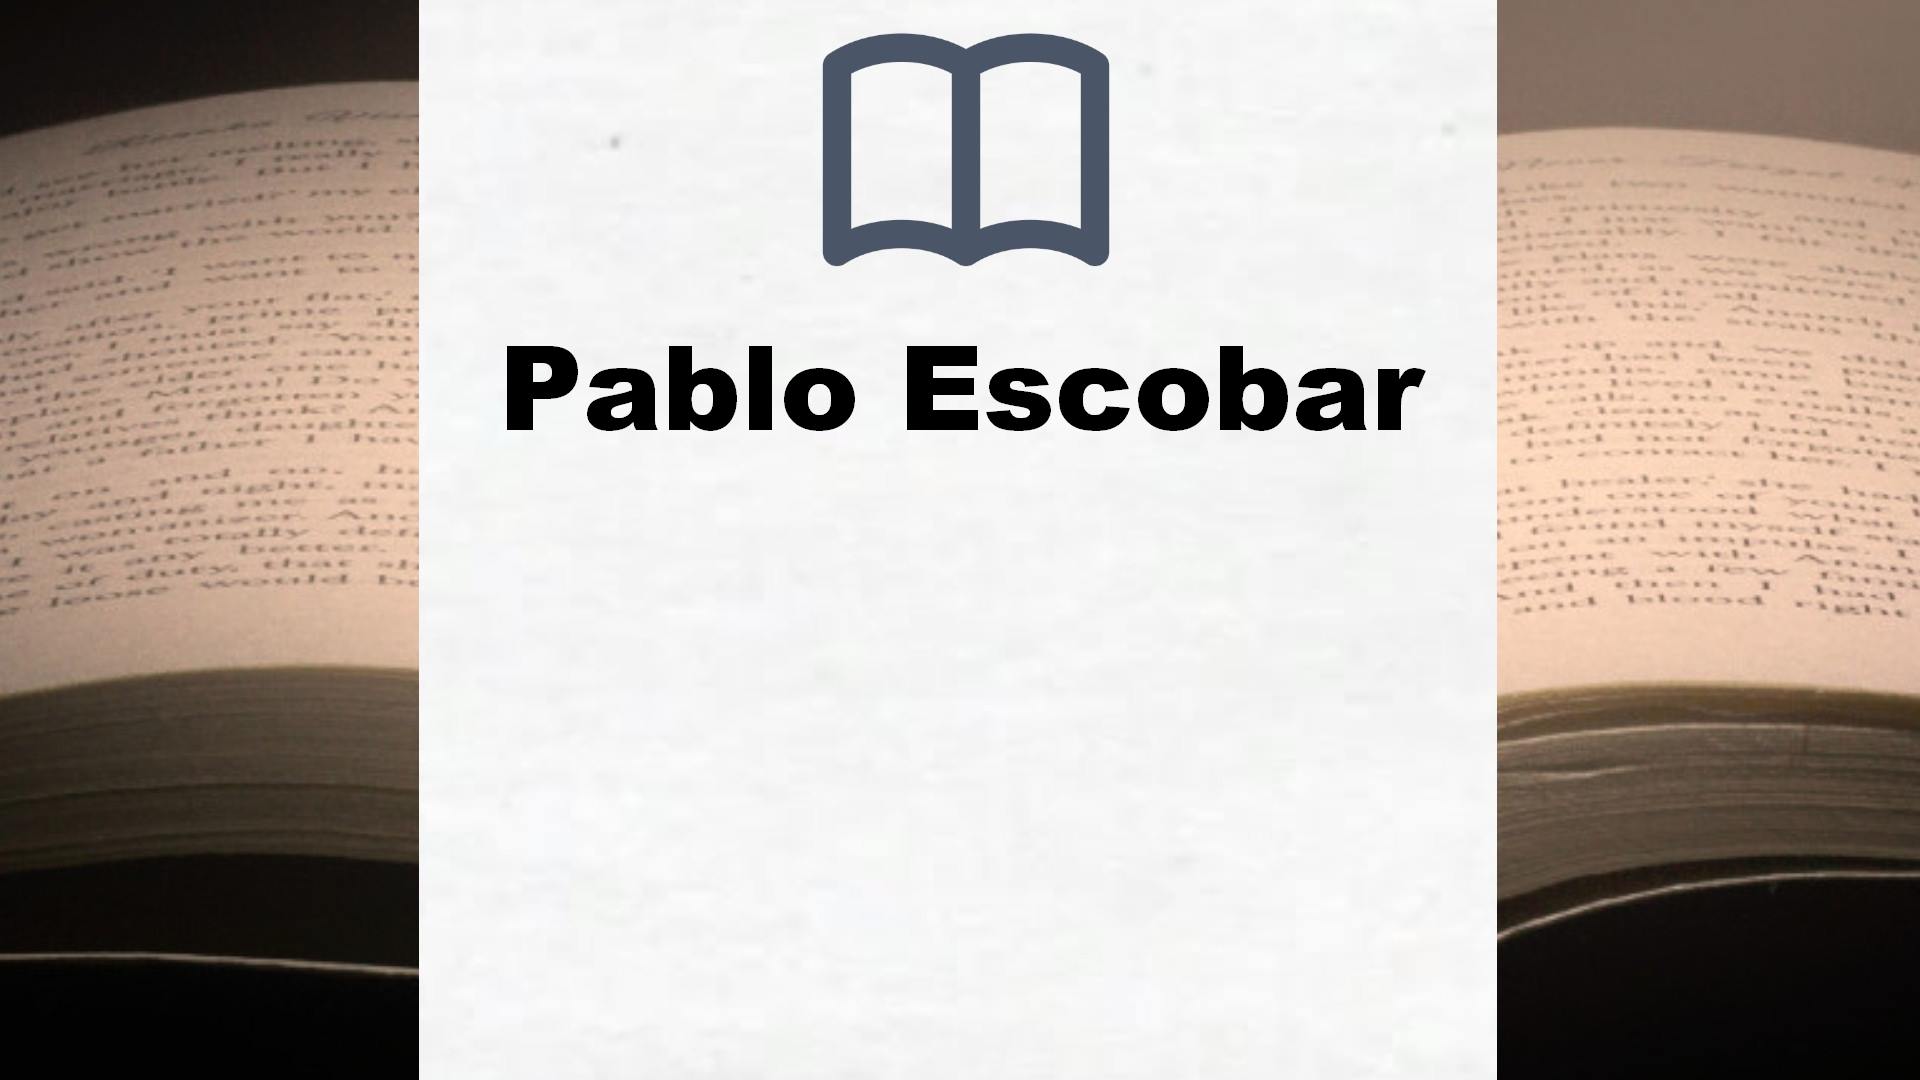 Bücher über Pablo Escobar